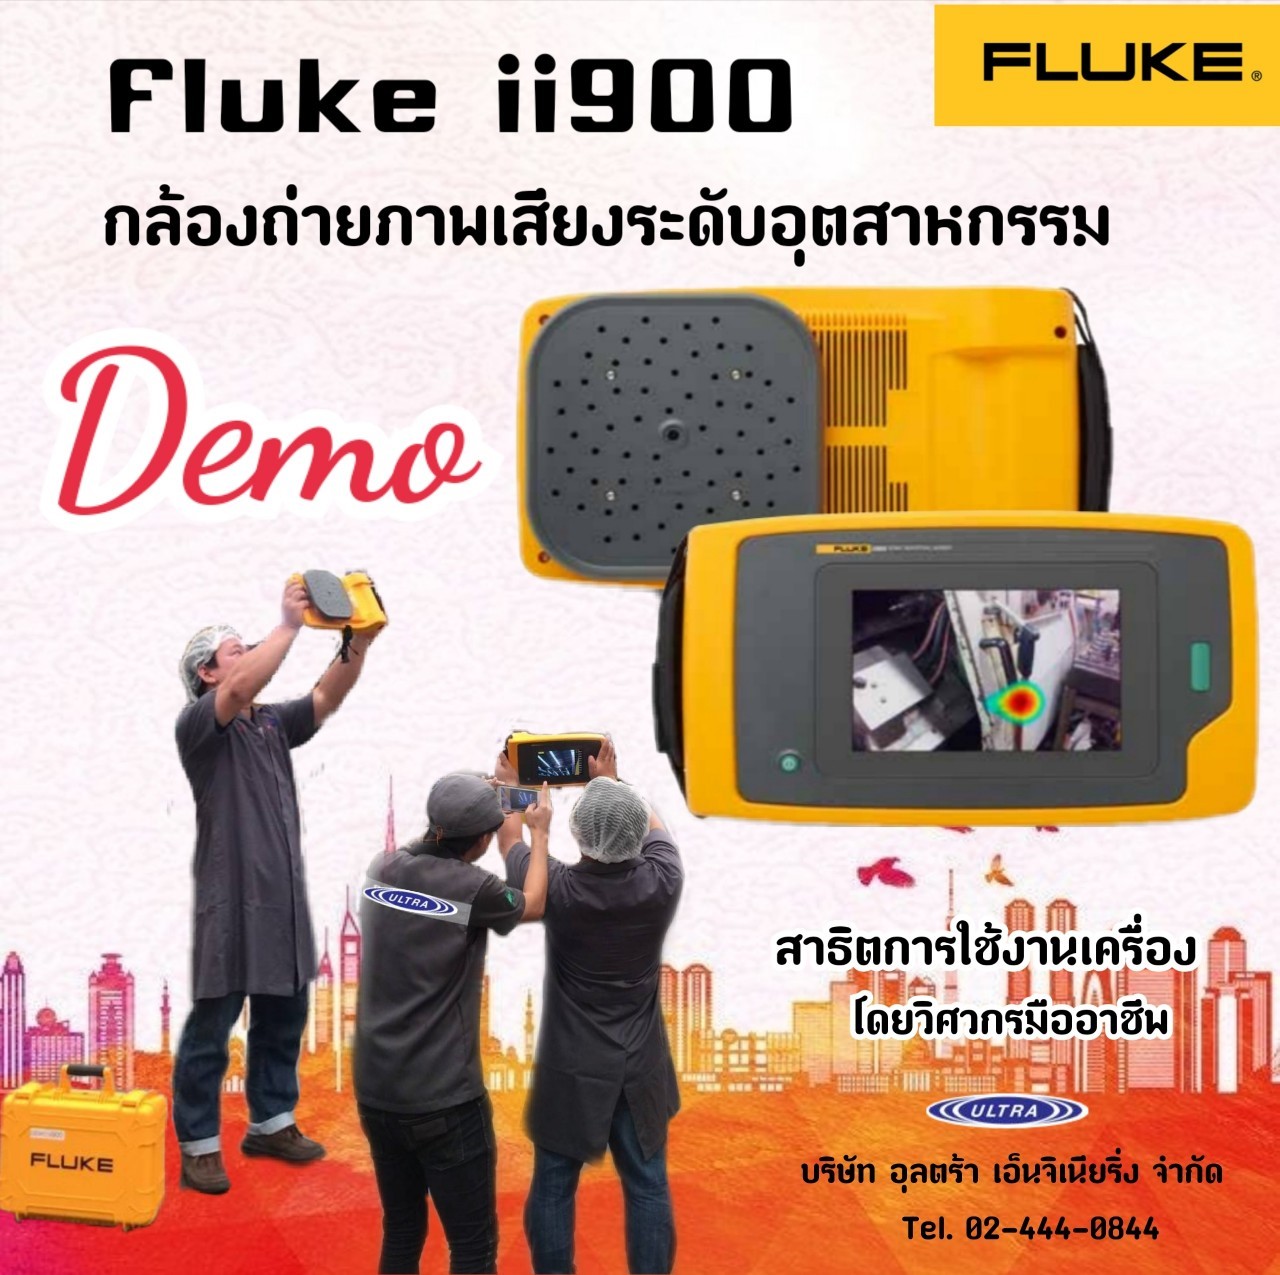 สาธิตเครื่องมือ Fluke ii900 กล้องถ่ายภาพเสียงระดับอุตสาหกรรม